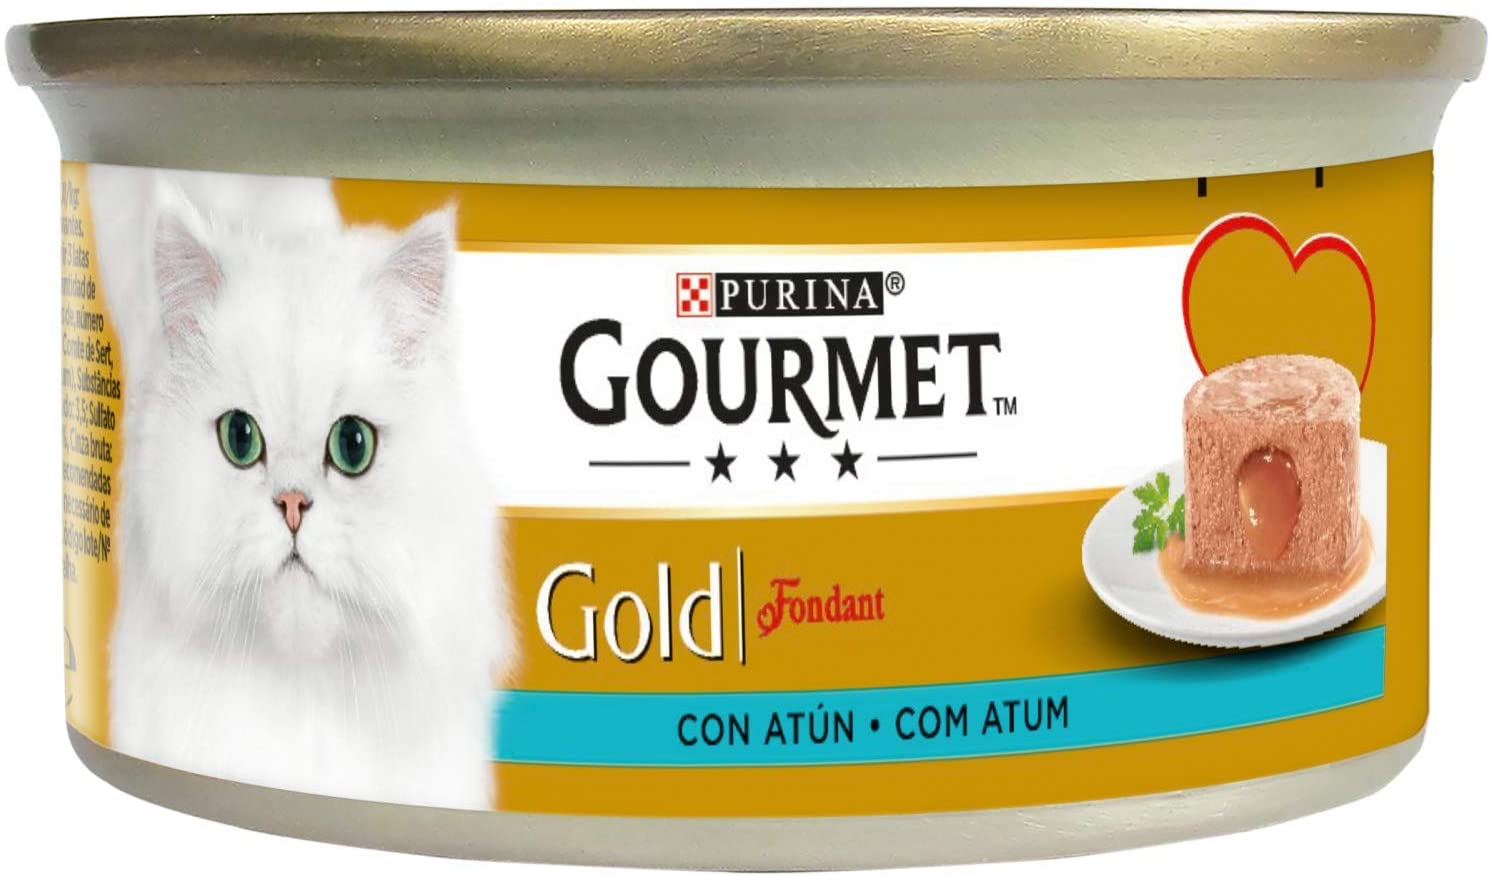  Purina Gourmet Gold Fondant comida para gatos con Atun 24 x 85 g 